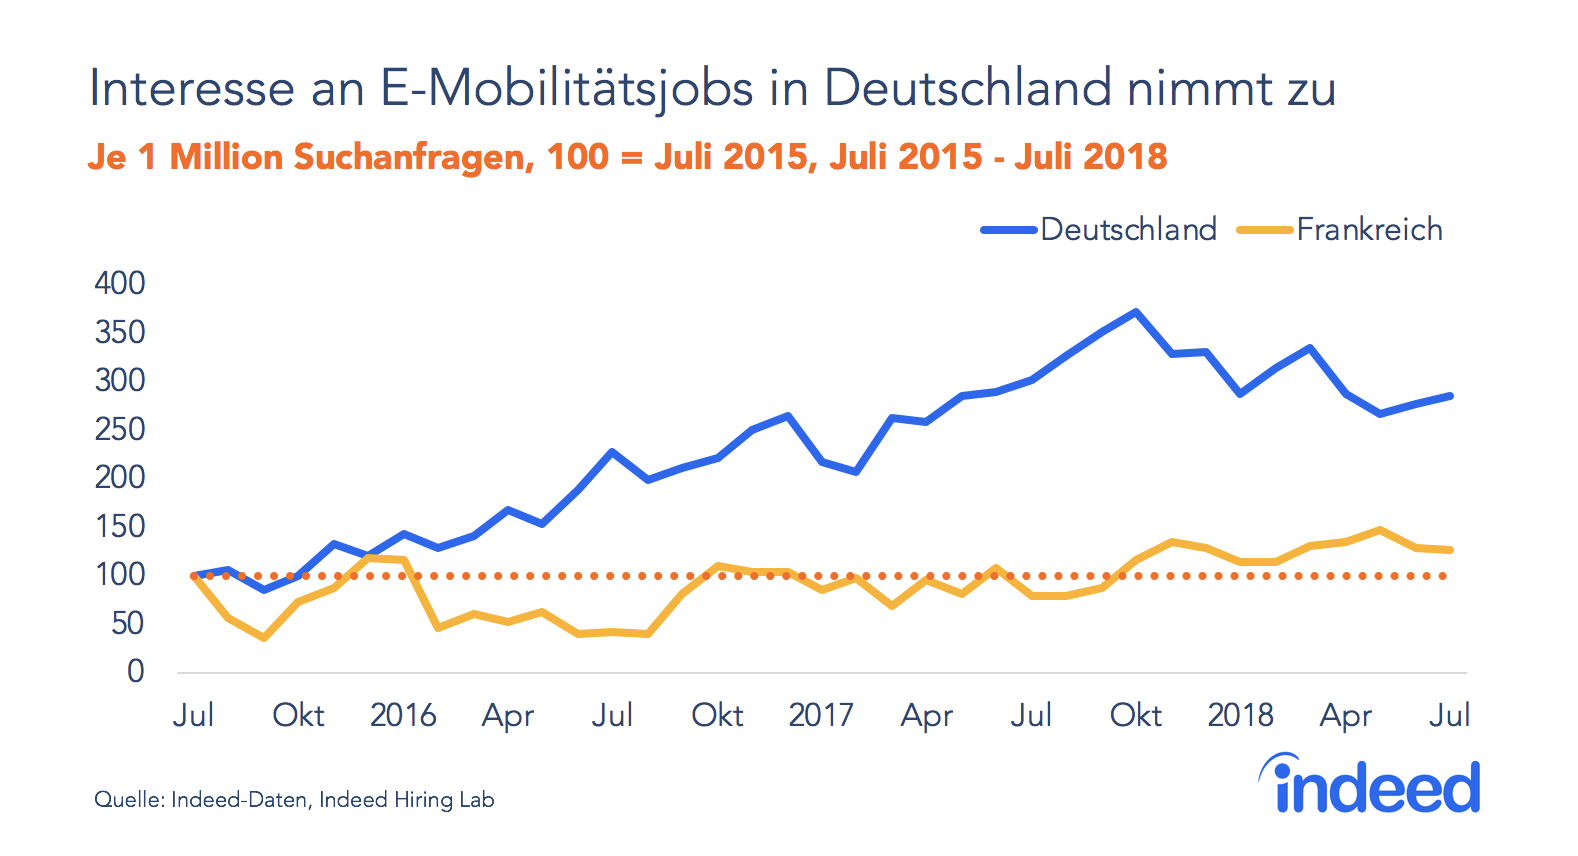 Interesse an E-Mobilitätsjobs in Deutschland steigt